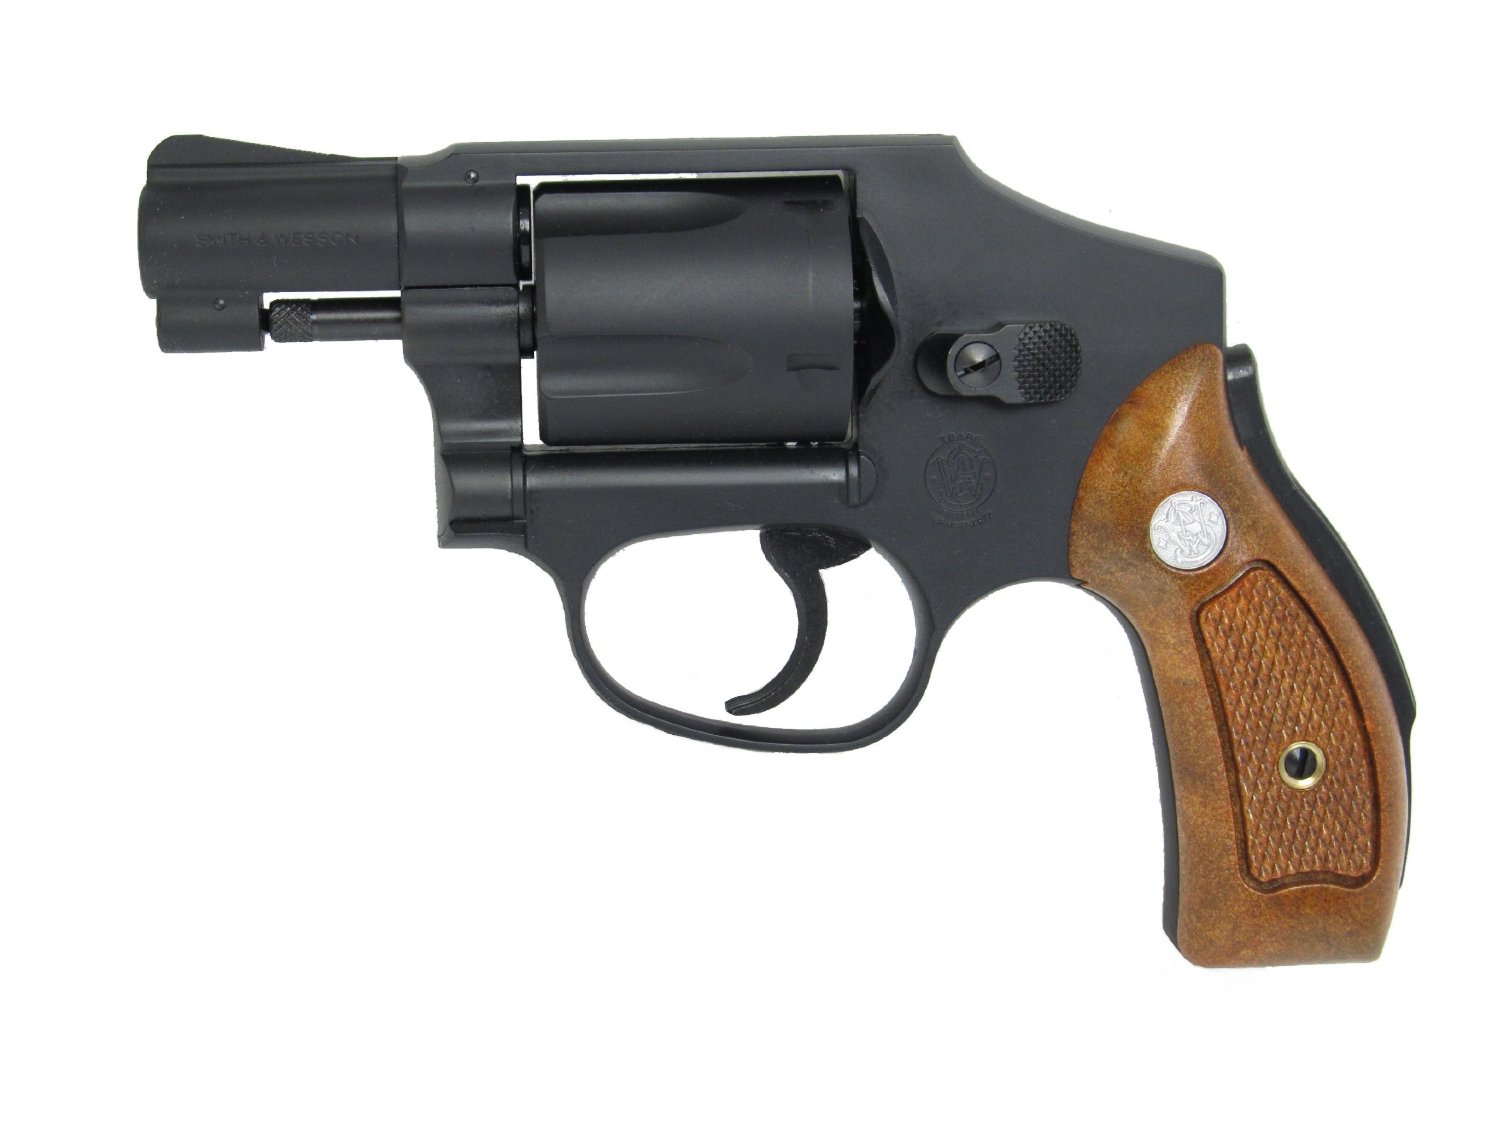 S W社が設立100周年を迎えた1952年に発売され センチニアル 百周年 と呼ばれているM40を再現したモデルガンM.G.CAP 7mmのキャップ火薬 別売 を使用することで発火します タナカ モデルガン W M40 2インチ レモンスクイザー TANAKA スミス 模造銃 18歳以上用 贈呈 遊戯銃 ガス銃 ウェッソン 18才以上用 抹消 正規品スーパーSALE×店内全品キャンペーン ピストル ハンドガン ウエッソン リボルバー 回転式けん銃 回転式拳銃 ガスブローバック